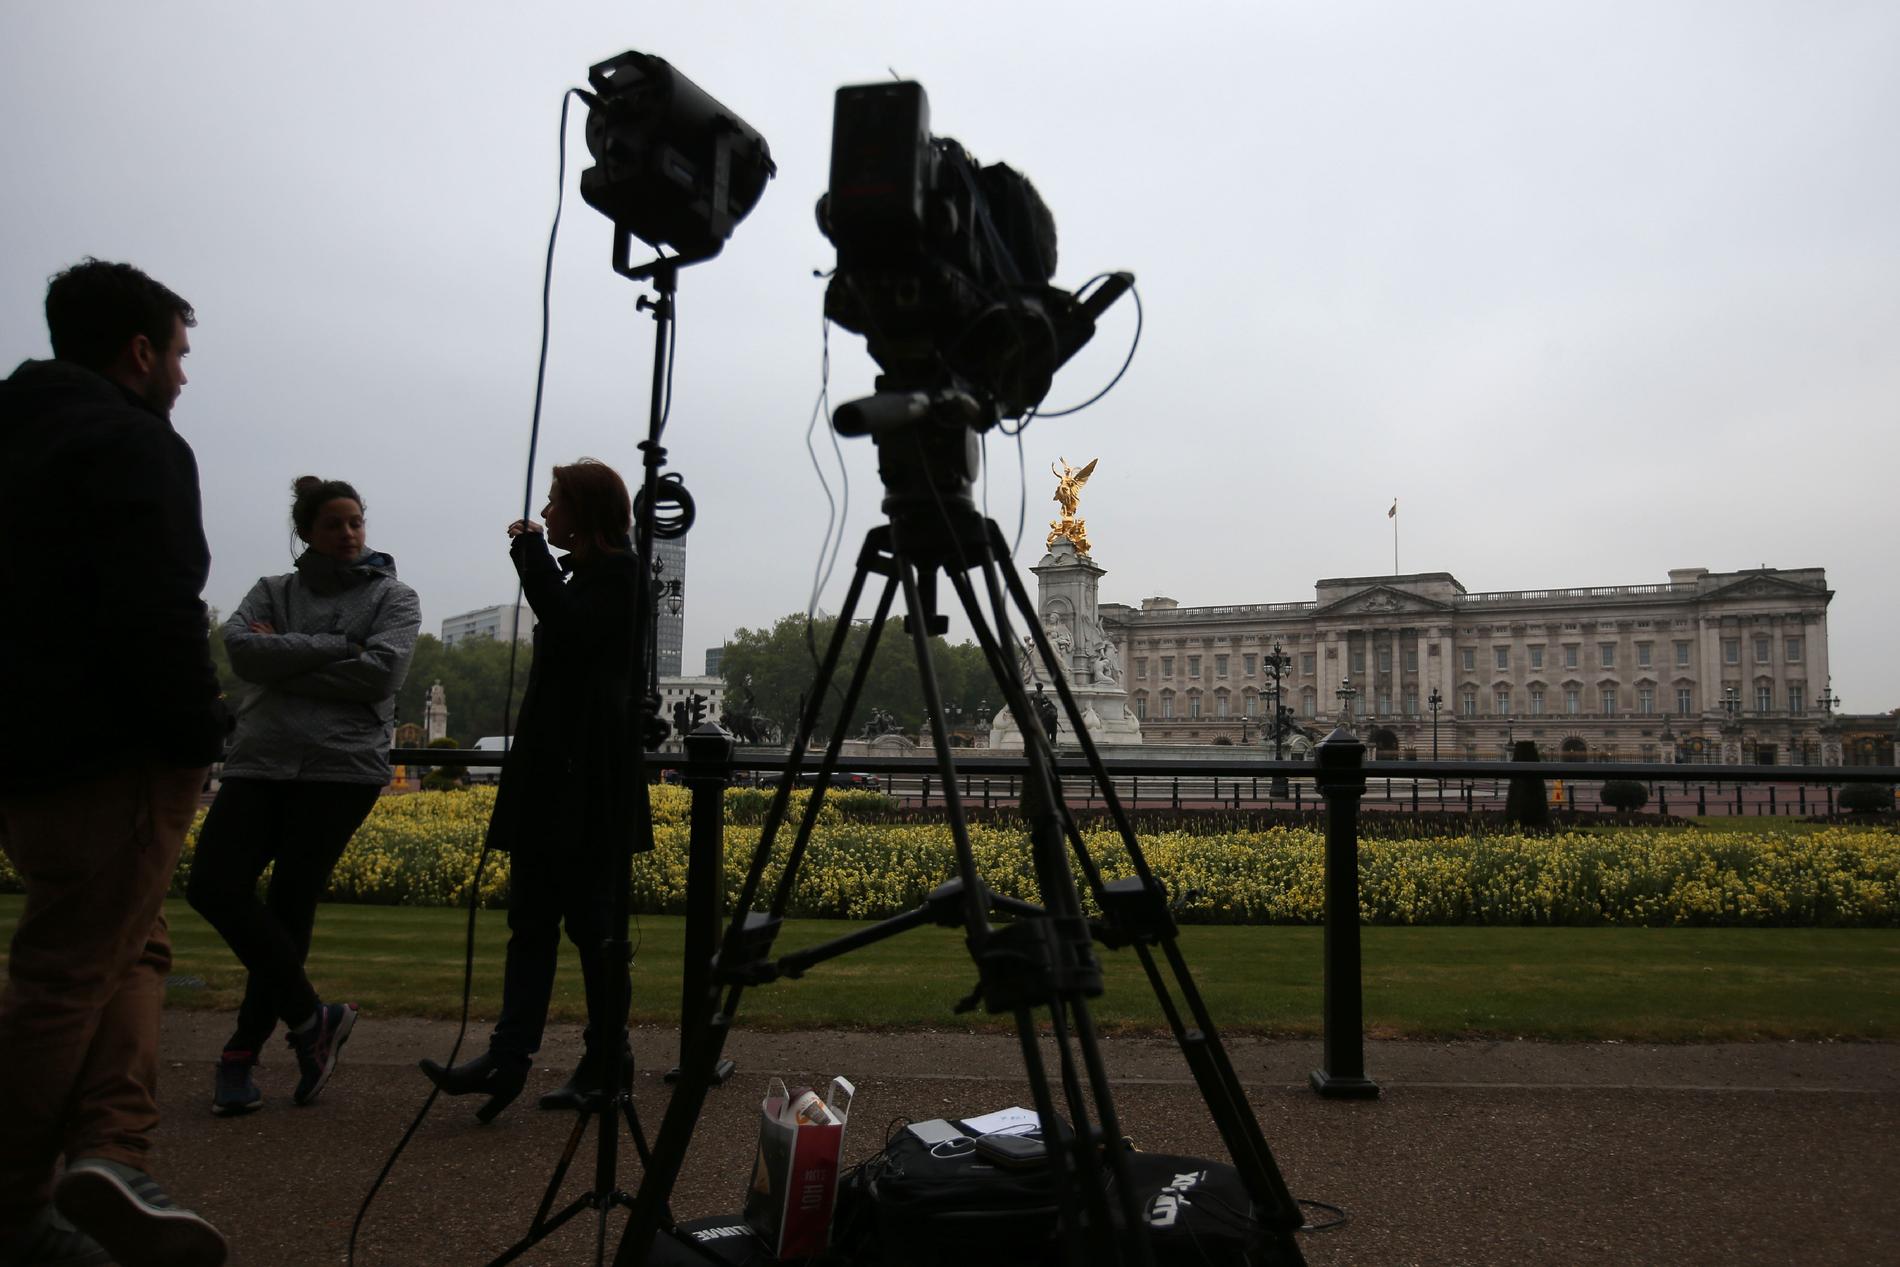 Media samlas utanför Buckingham Palace.